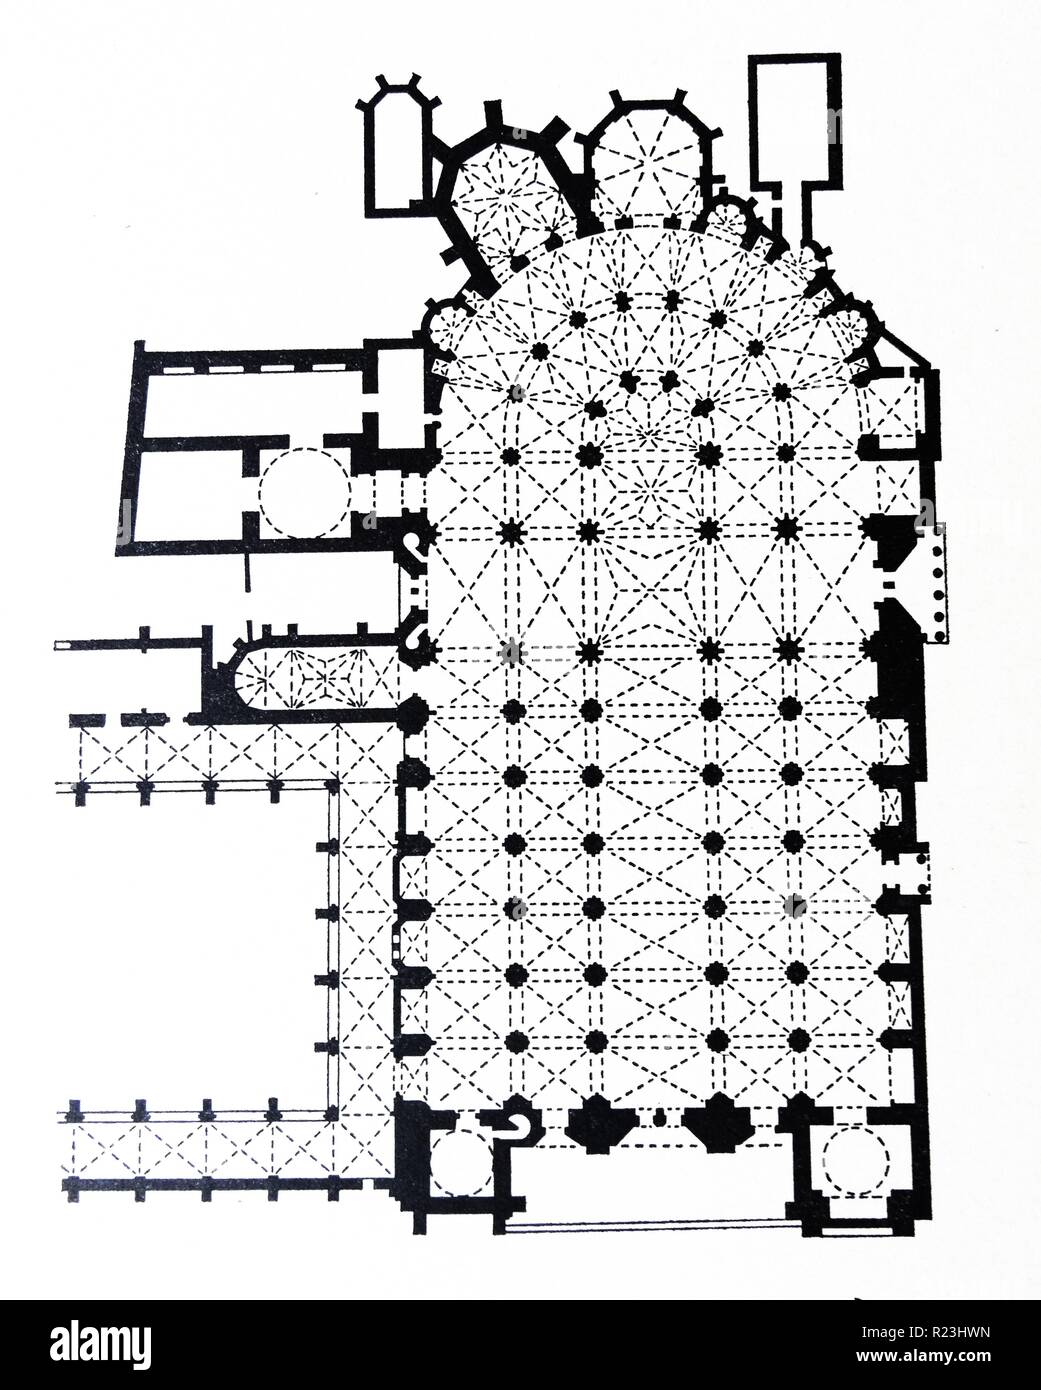 Plano de piso de la catedral de Toledo. La Catedral Primada de Santa María de Toledo, es una catedral Católica Romana en Toledo, España, sede de la archidiócesis metropolitana de Toledo. Fecha siglo 10 Foto de stock